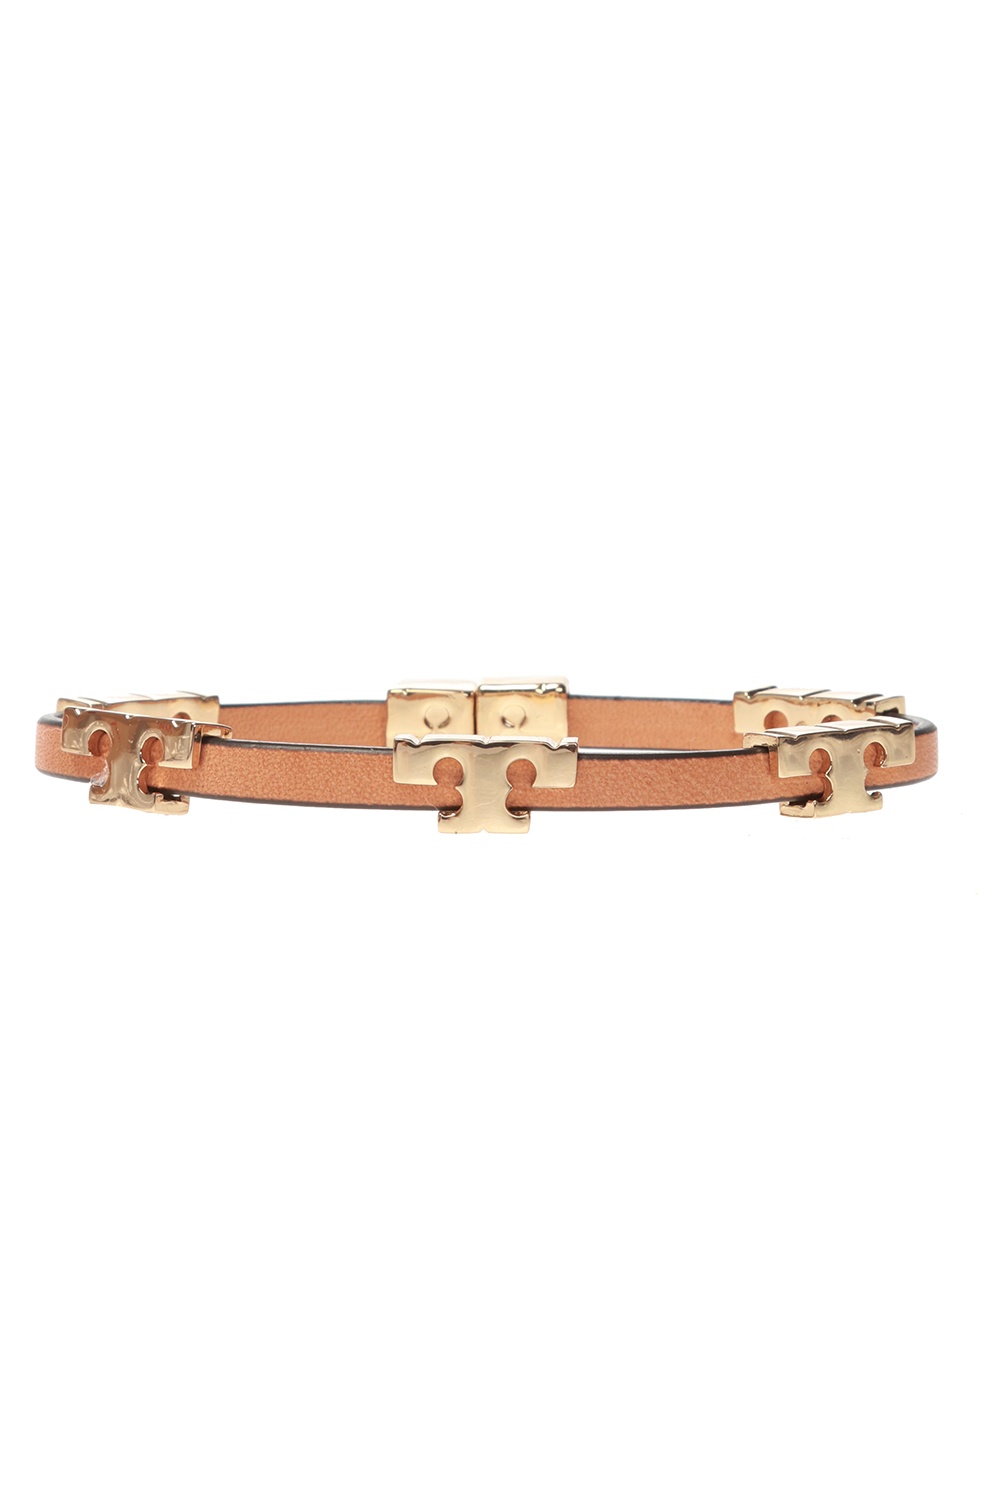 Tory Burch Leather bracelet | Women's Jewelery | IetpShops